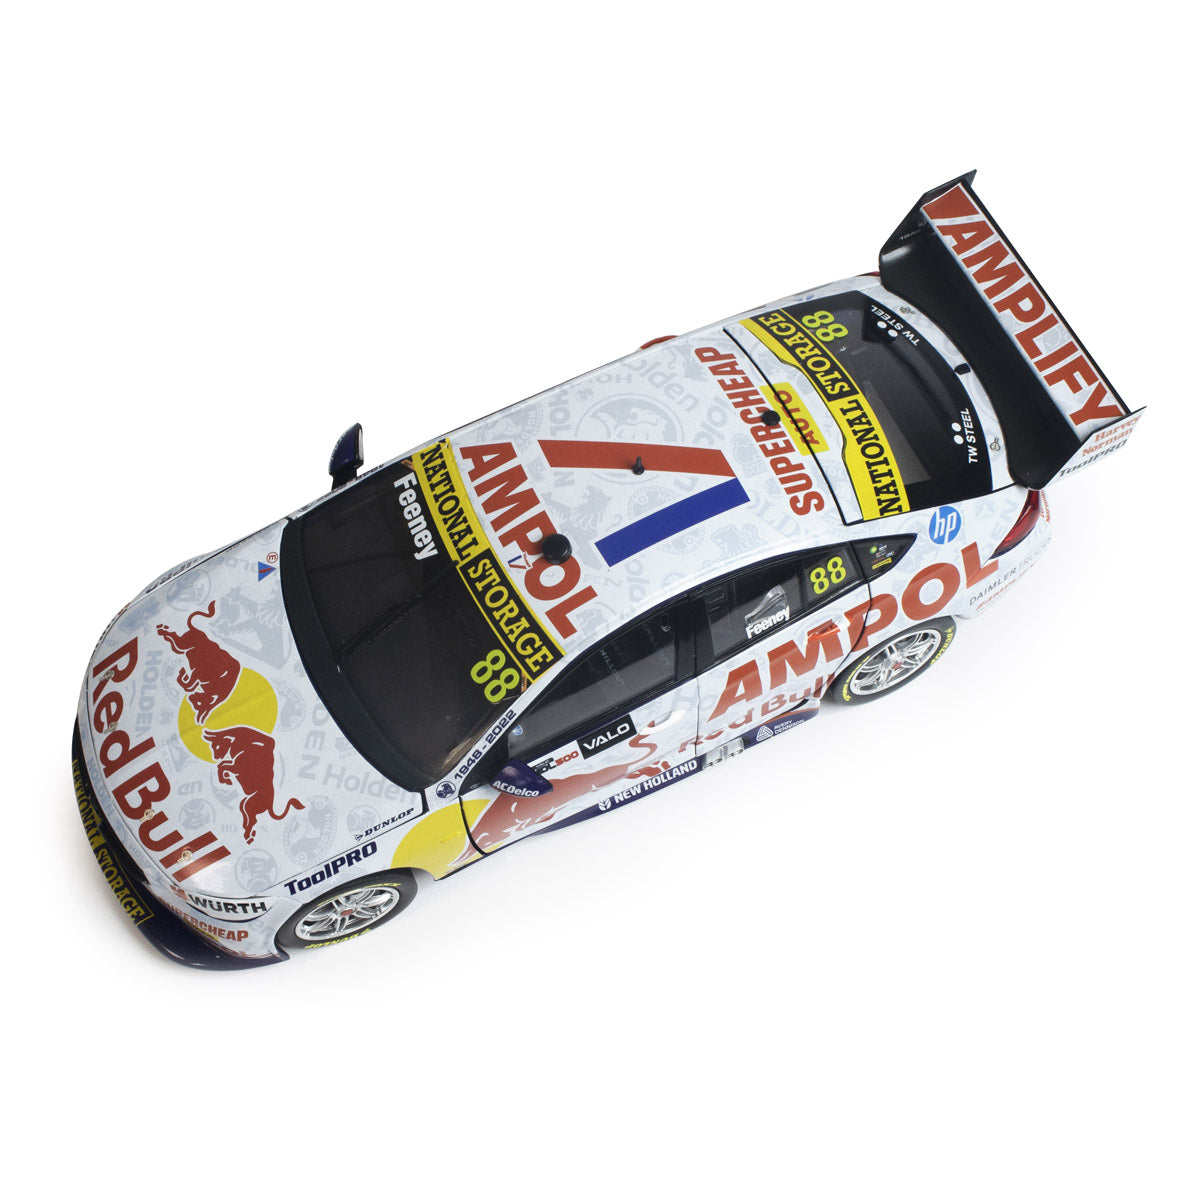 Holden ZB Commodore - Red Bull Ampol Racing - Feeney #88 - 2022 Valo Adelaide 500 Race 34 Winner (Feeney's 1st Race Win)